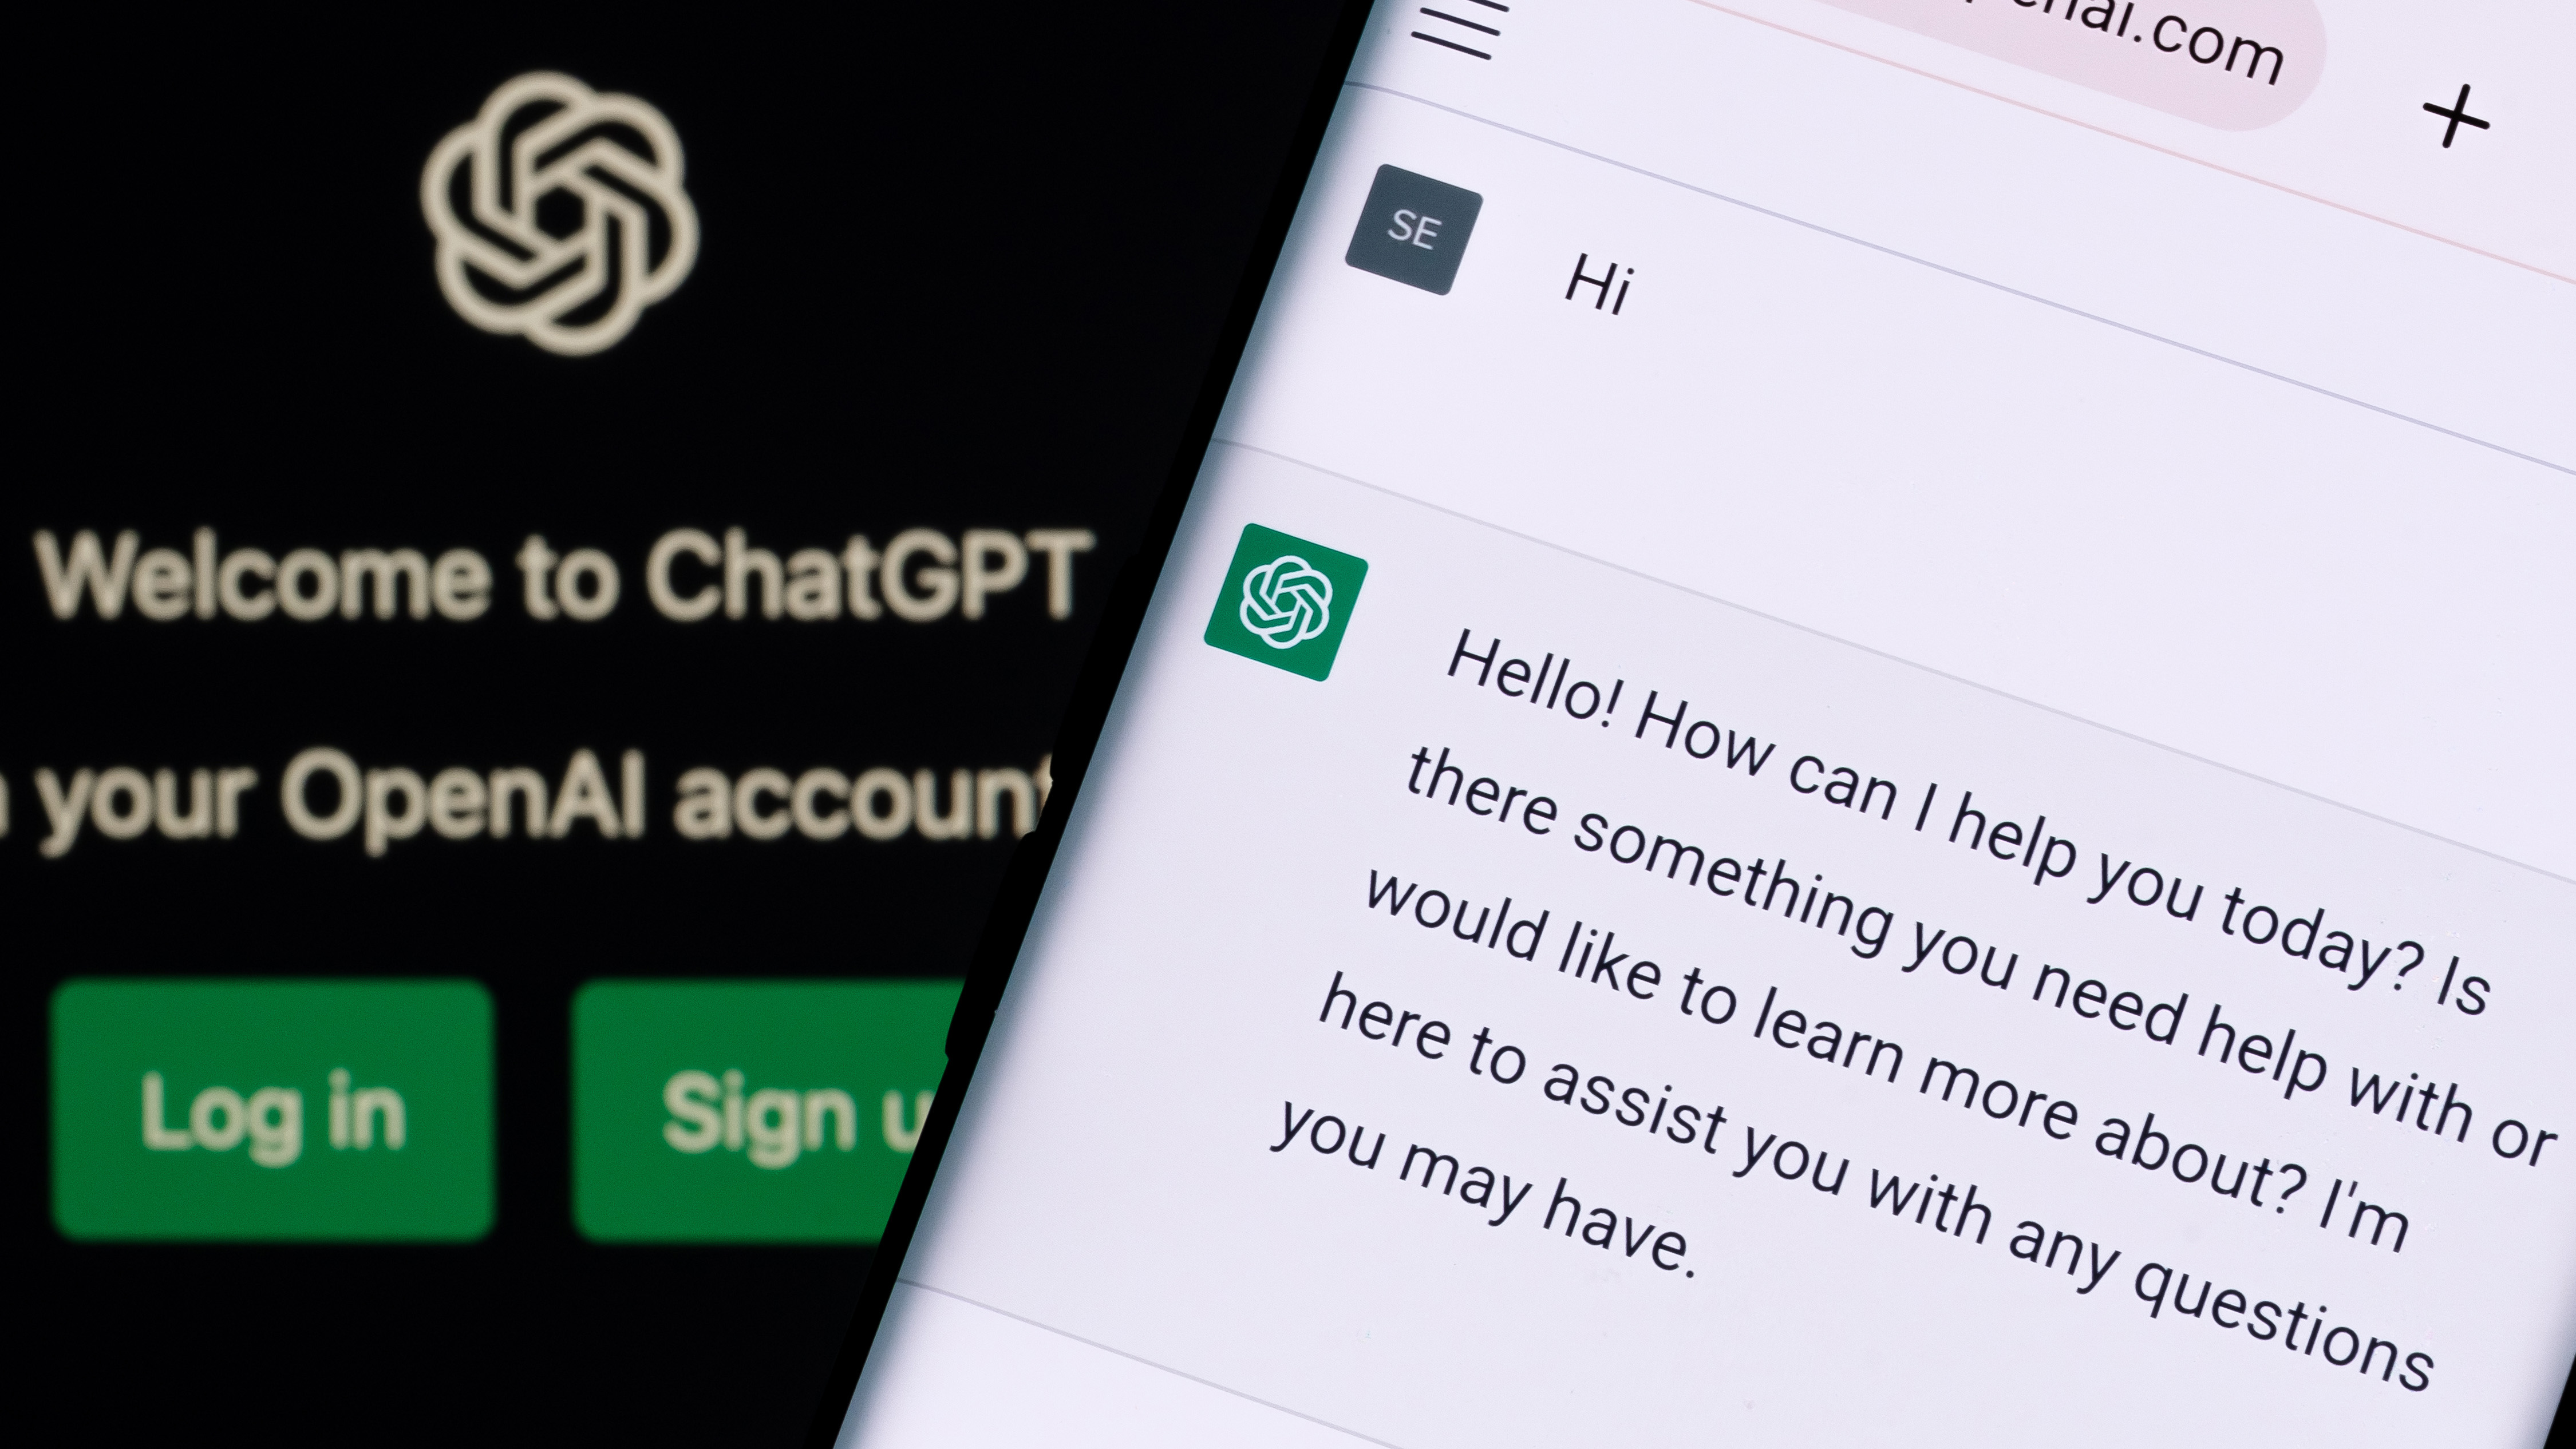 ChatGPT チャット ボット画面がスマートフォンとラップトップのディスプレイに表示され、背景に Chat GPT ログイン画面が表示されます。 OpenAIによる新しいAIチャットボット。 イギリス、スタッフォード、2022 年 12 月 13 日。